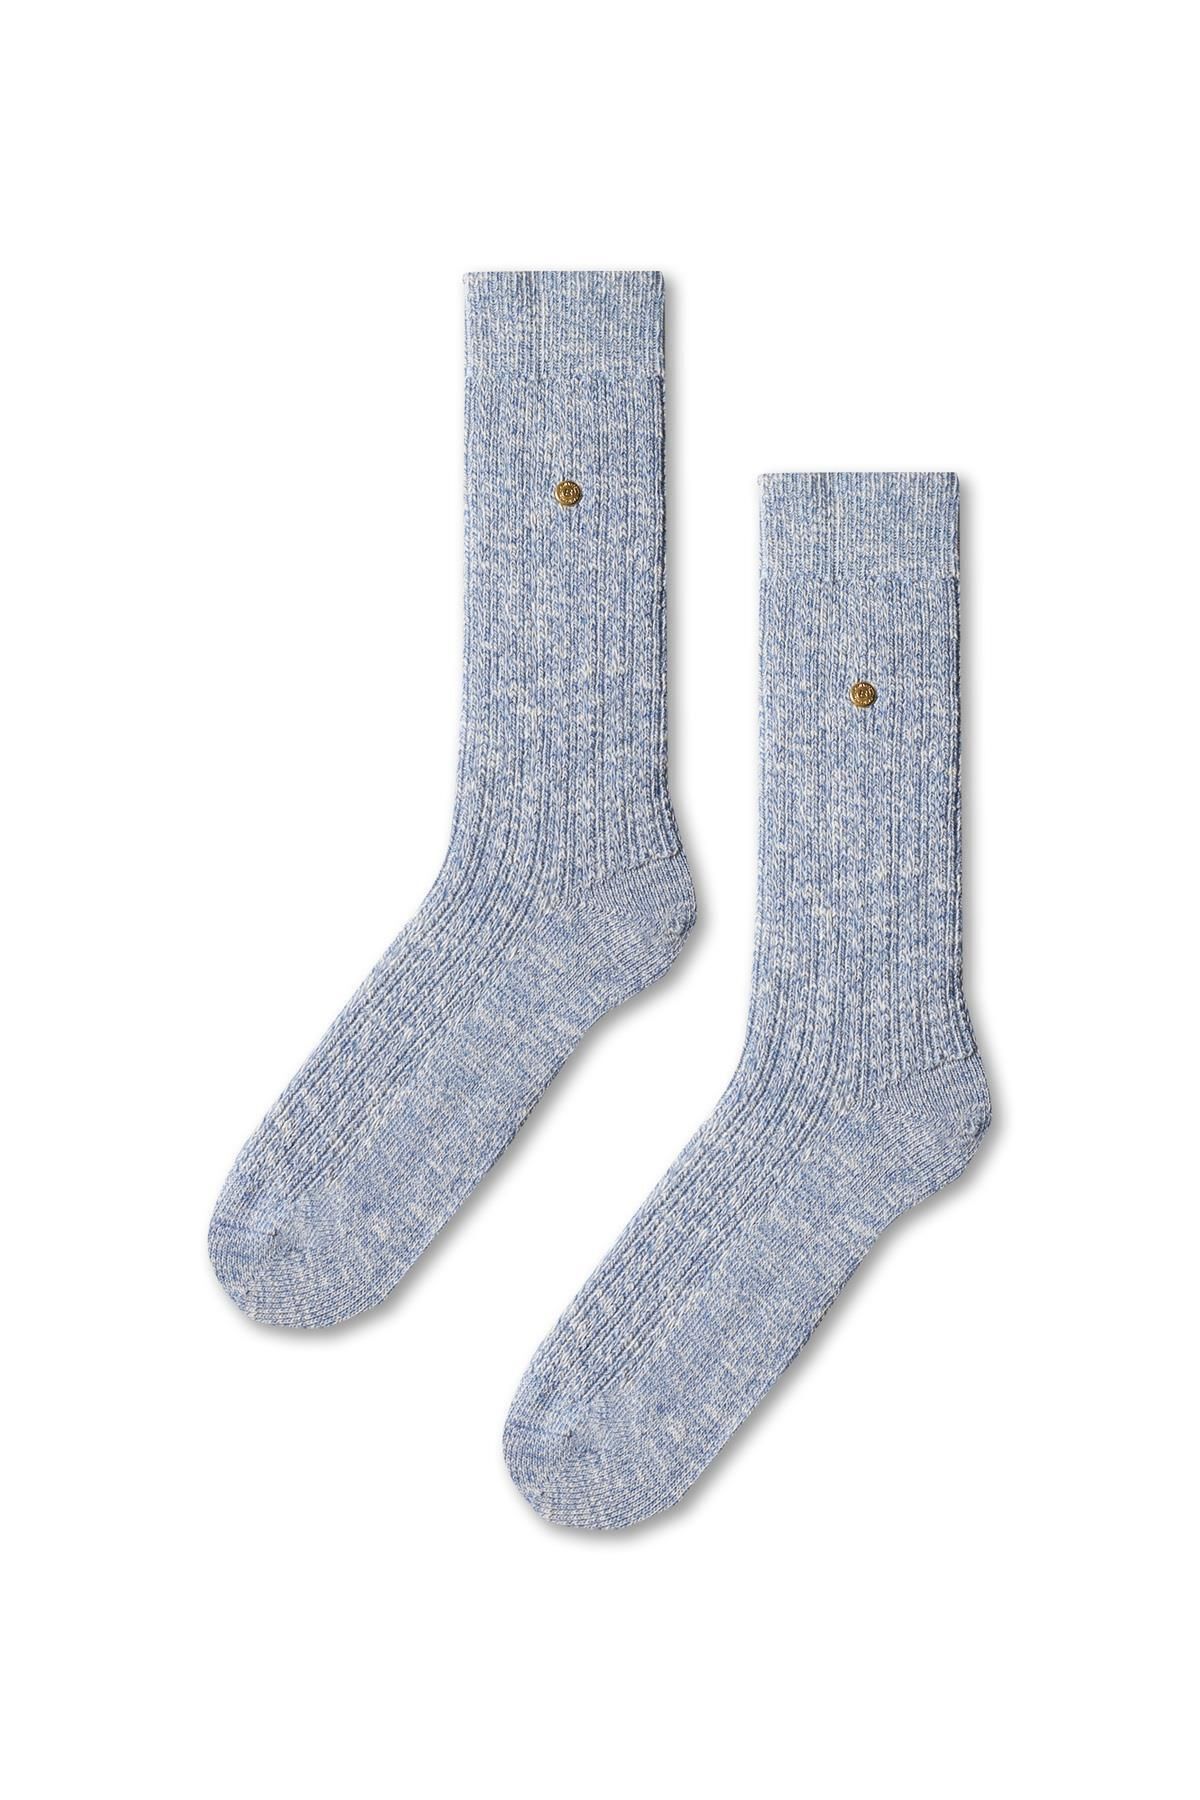 Katia & Bony Kadın Desenli Kalın Soket Çorap Lacivert